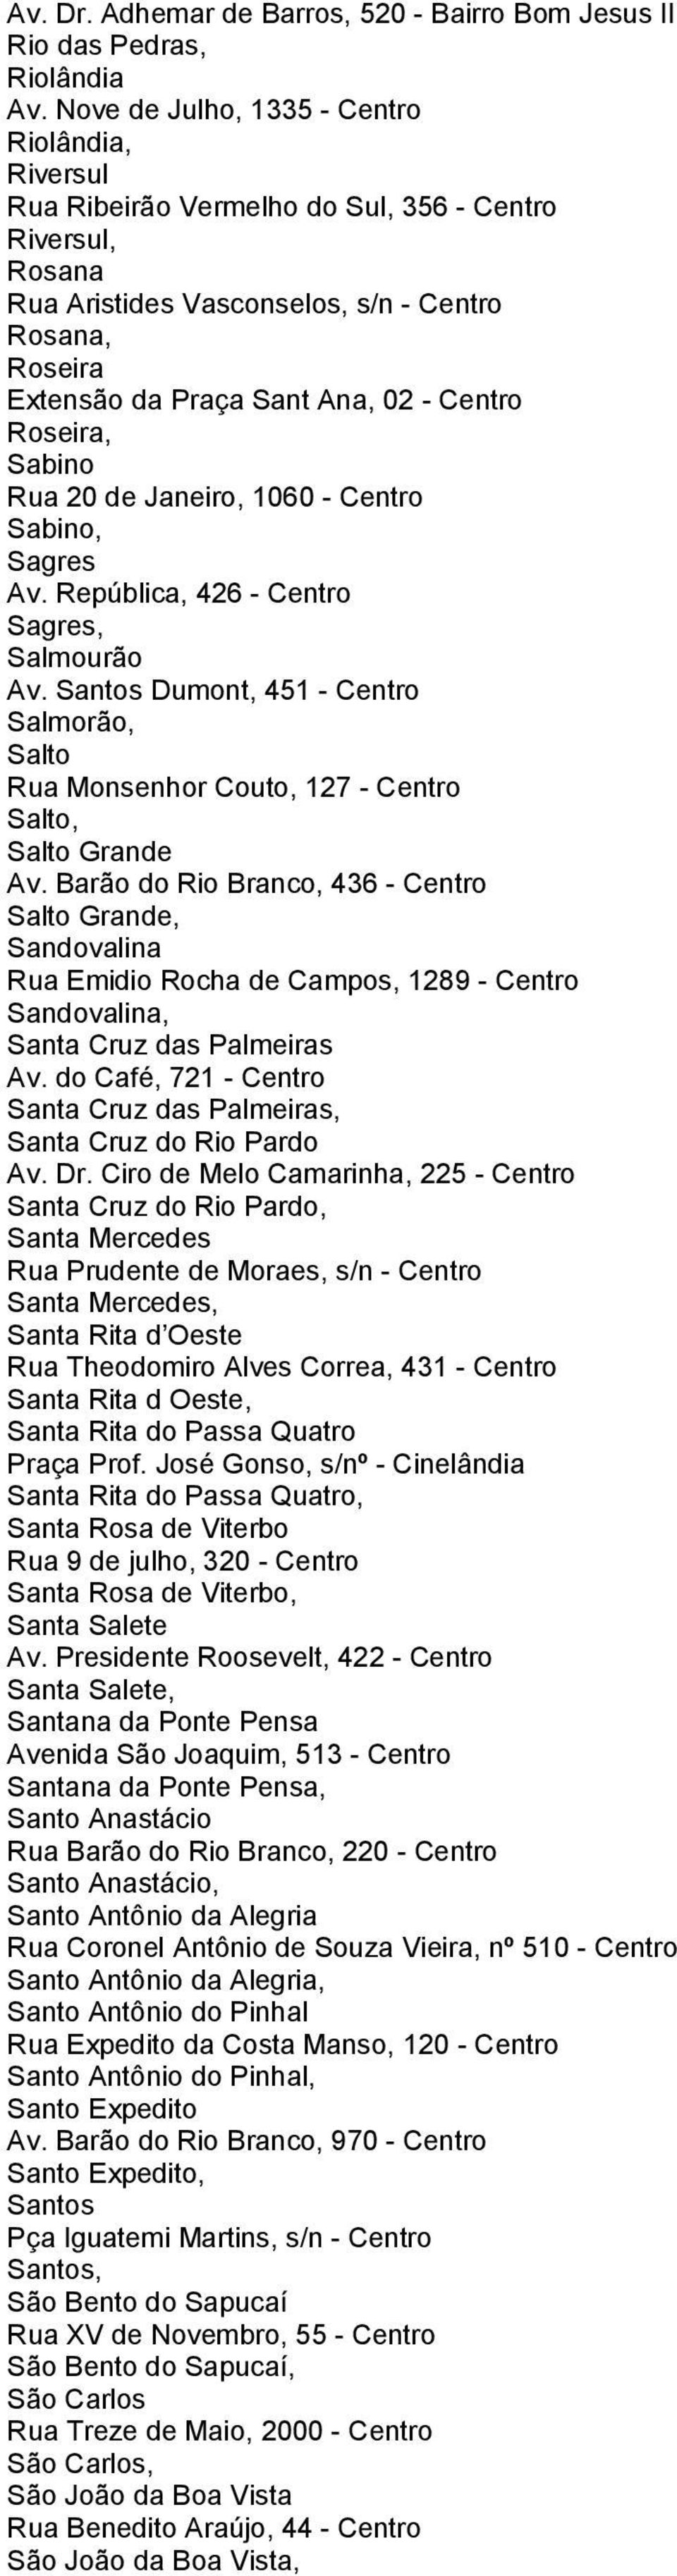 Centro Roseira, Sabino Rua 20 de Janeiro, 1060 - Centro Sabino, Sagres Av. República, 426 - Centro Sagres, Salmourão Av.